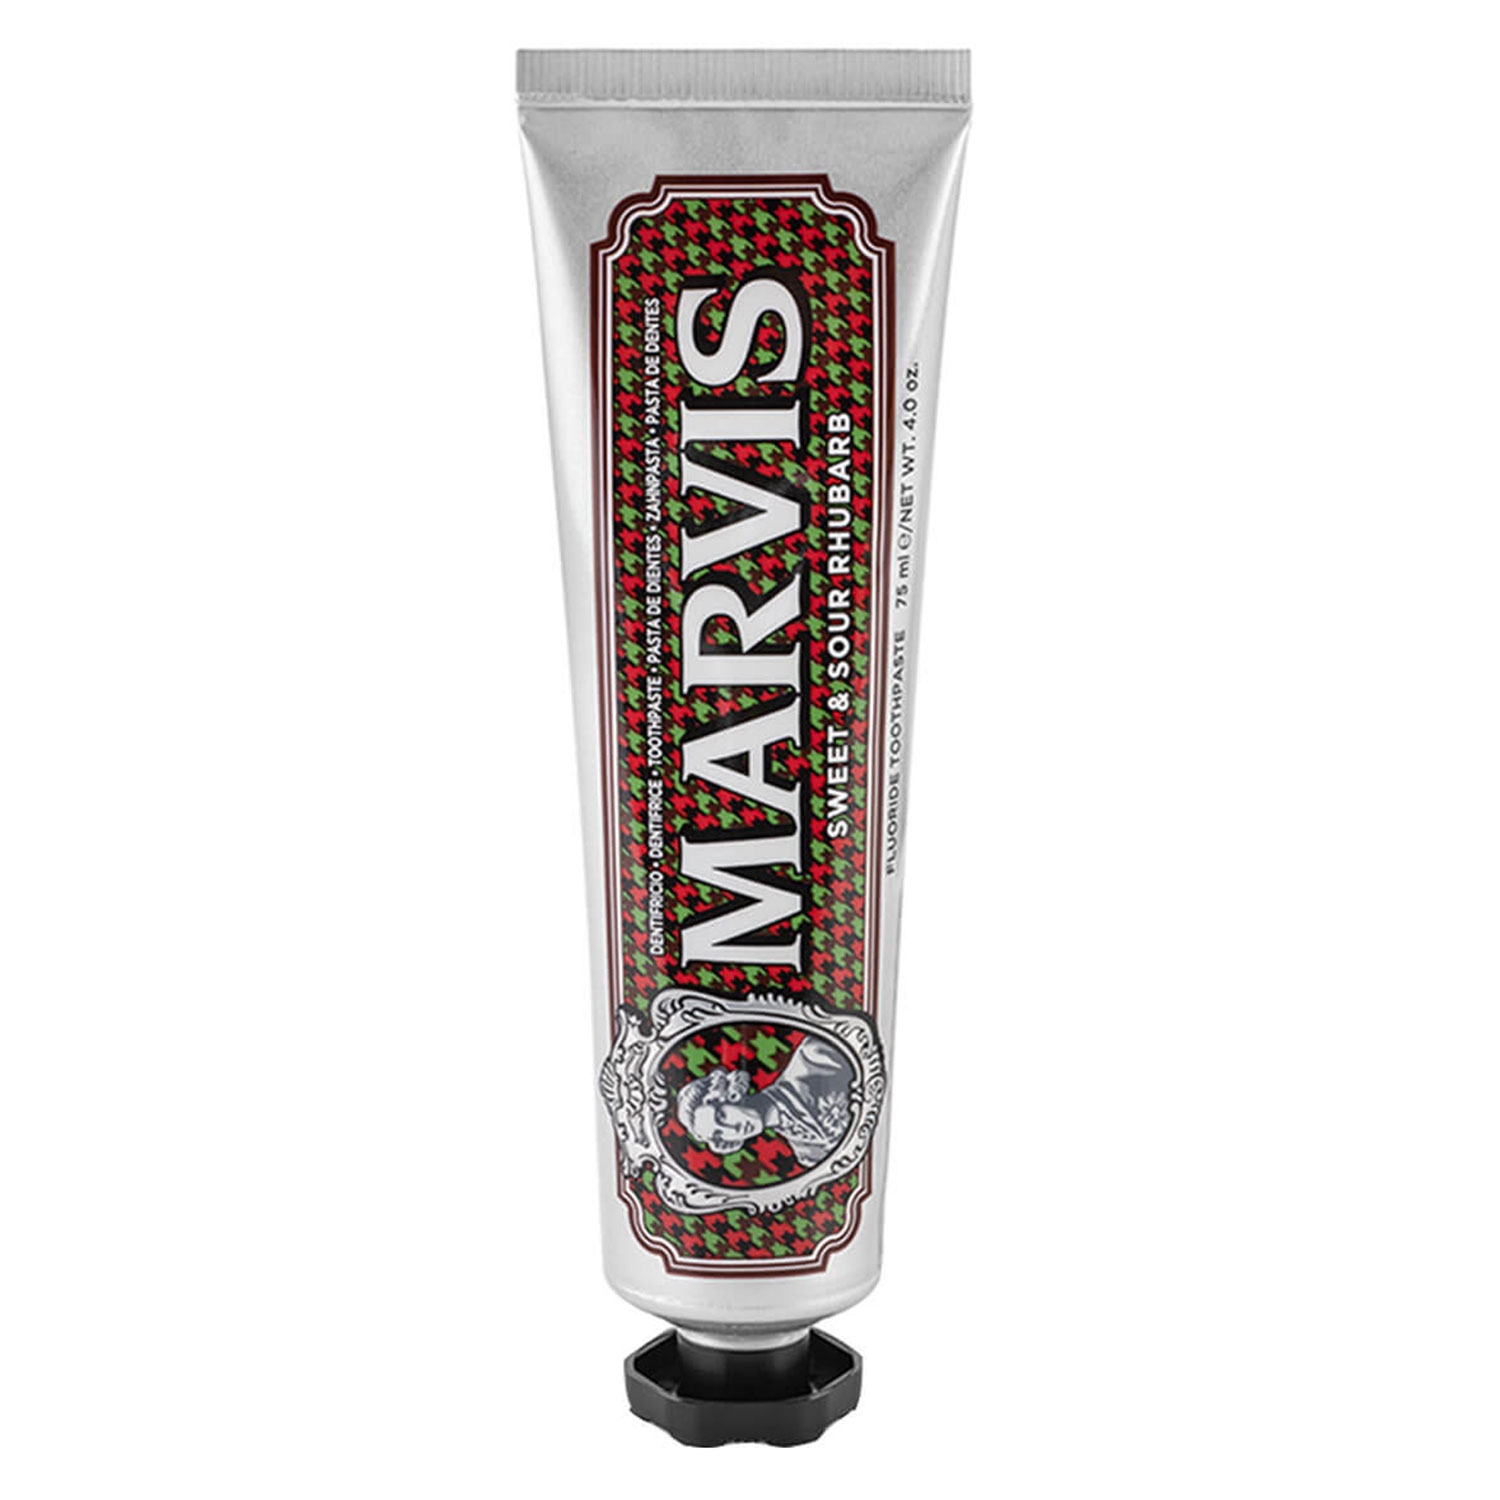 Produktbild von Marvis - Sweet & Sour Rhubarb Toothpaste